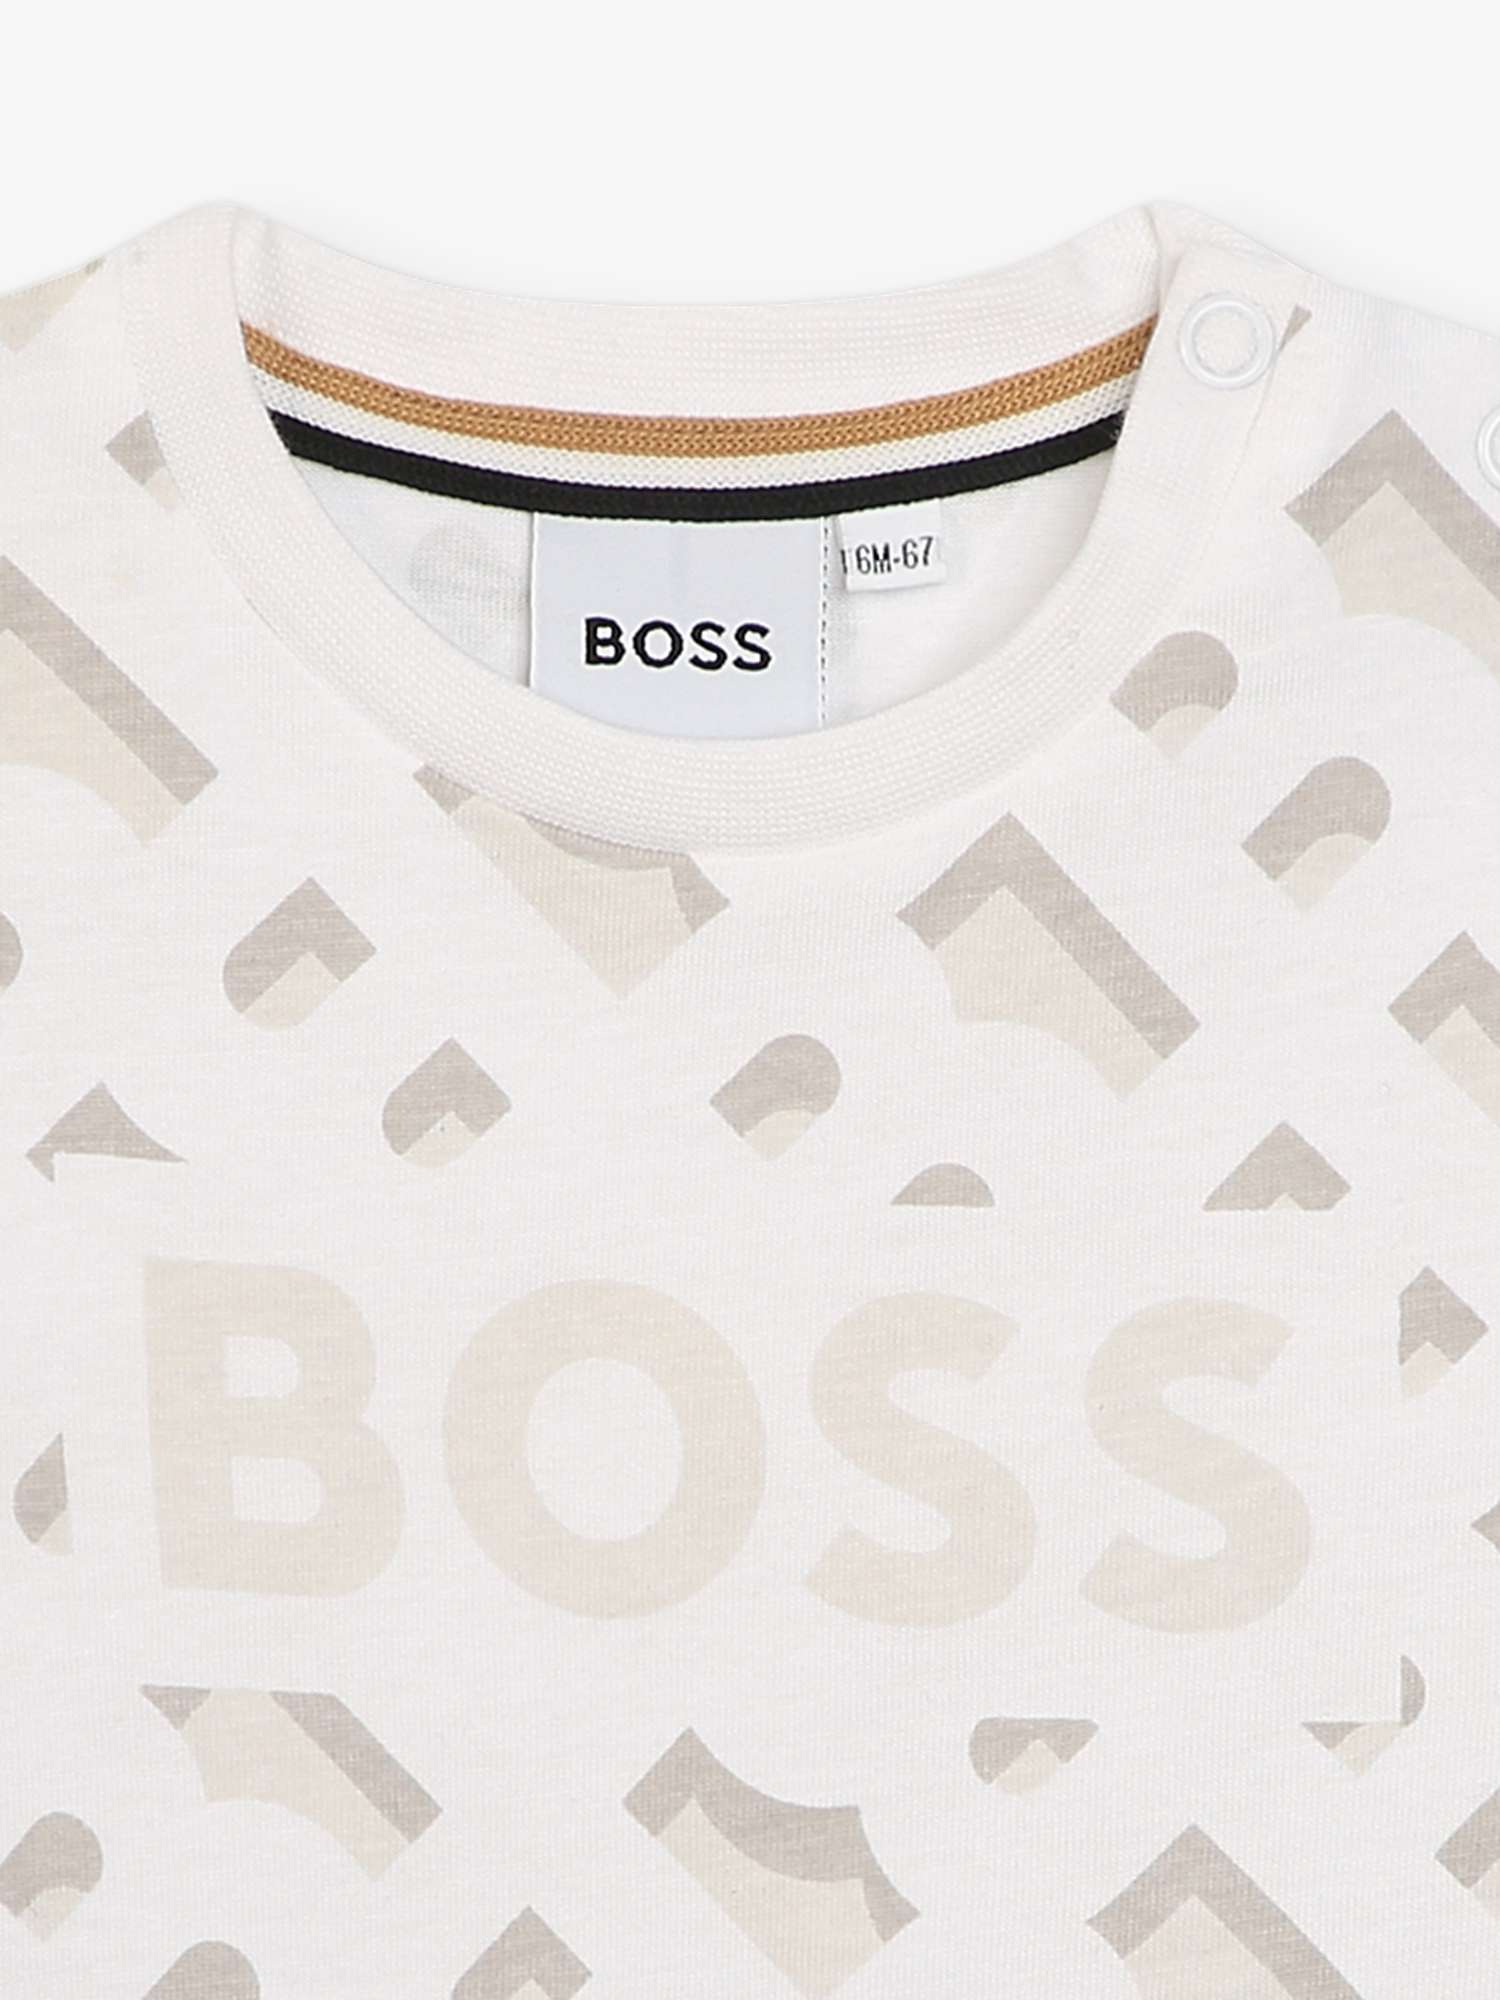 Buy BOSS Baby Monogram Print Logo Short Sleeve T-Shirt, White Online at johnlewis.com